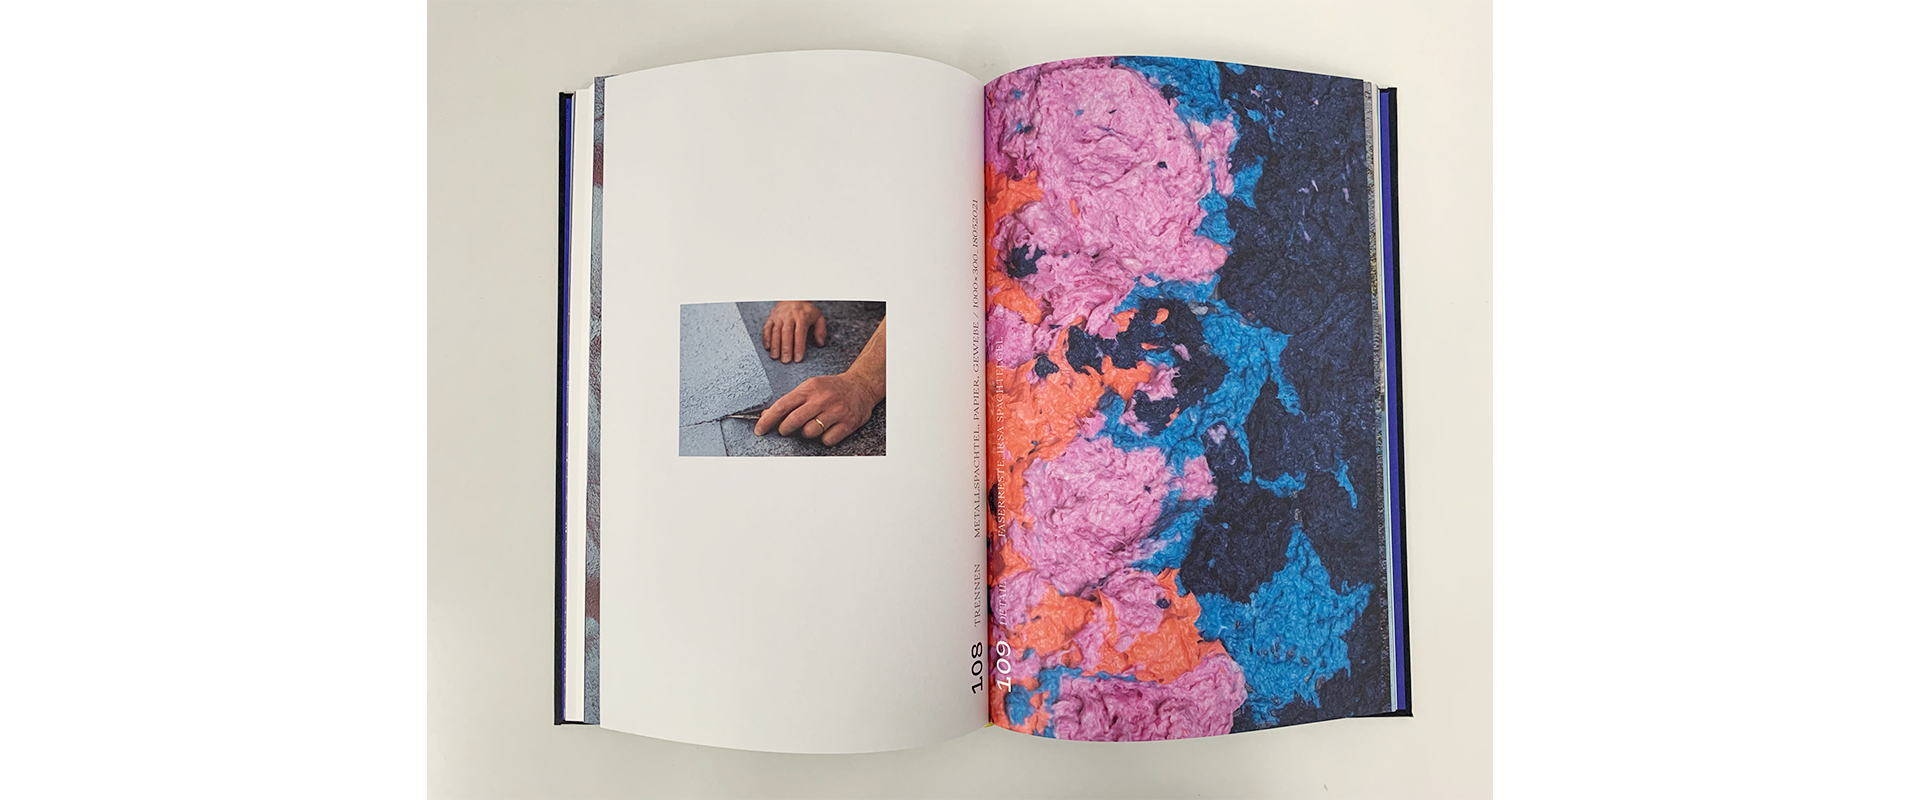 Katalog "Papier_", Raphael Grotthus, 2021